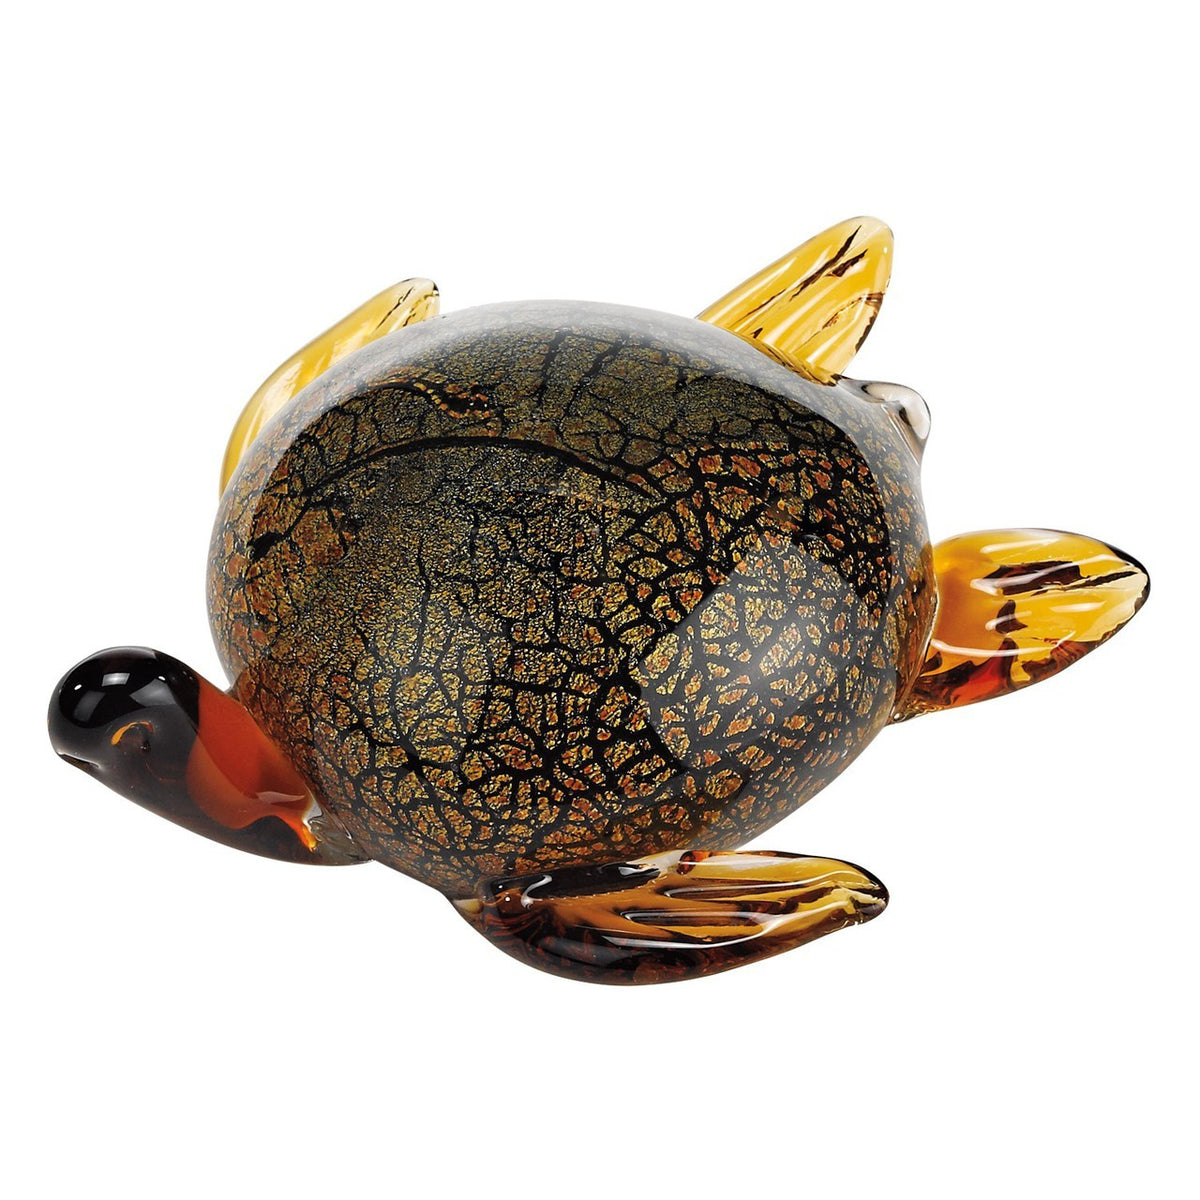 Murano Style Artistic Glass Sea Turtle L7 inches